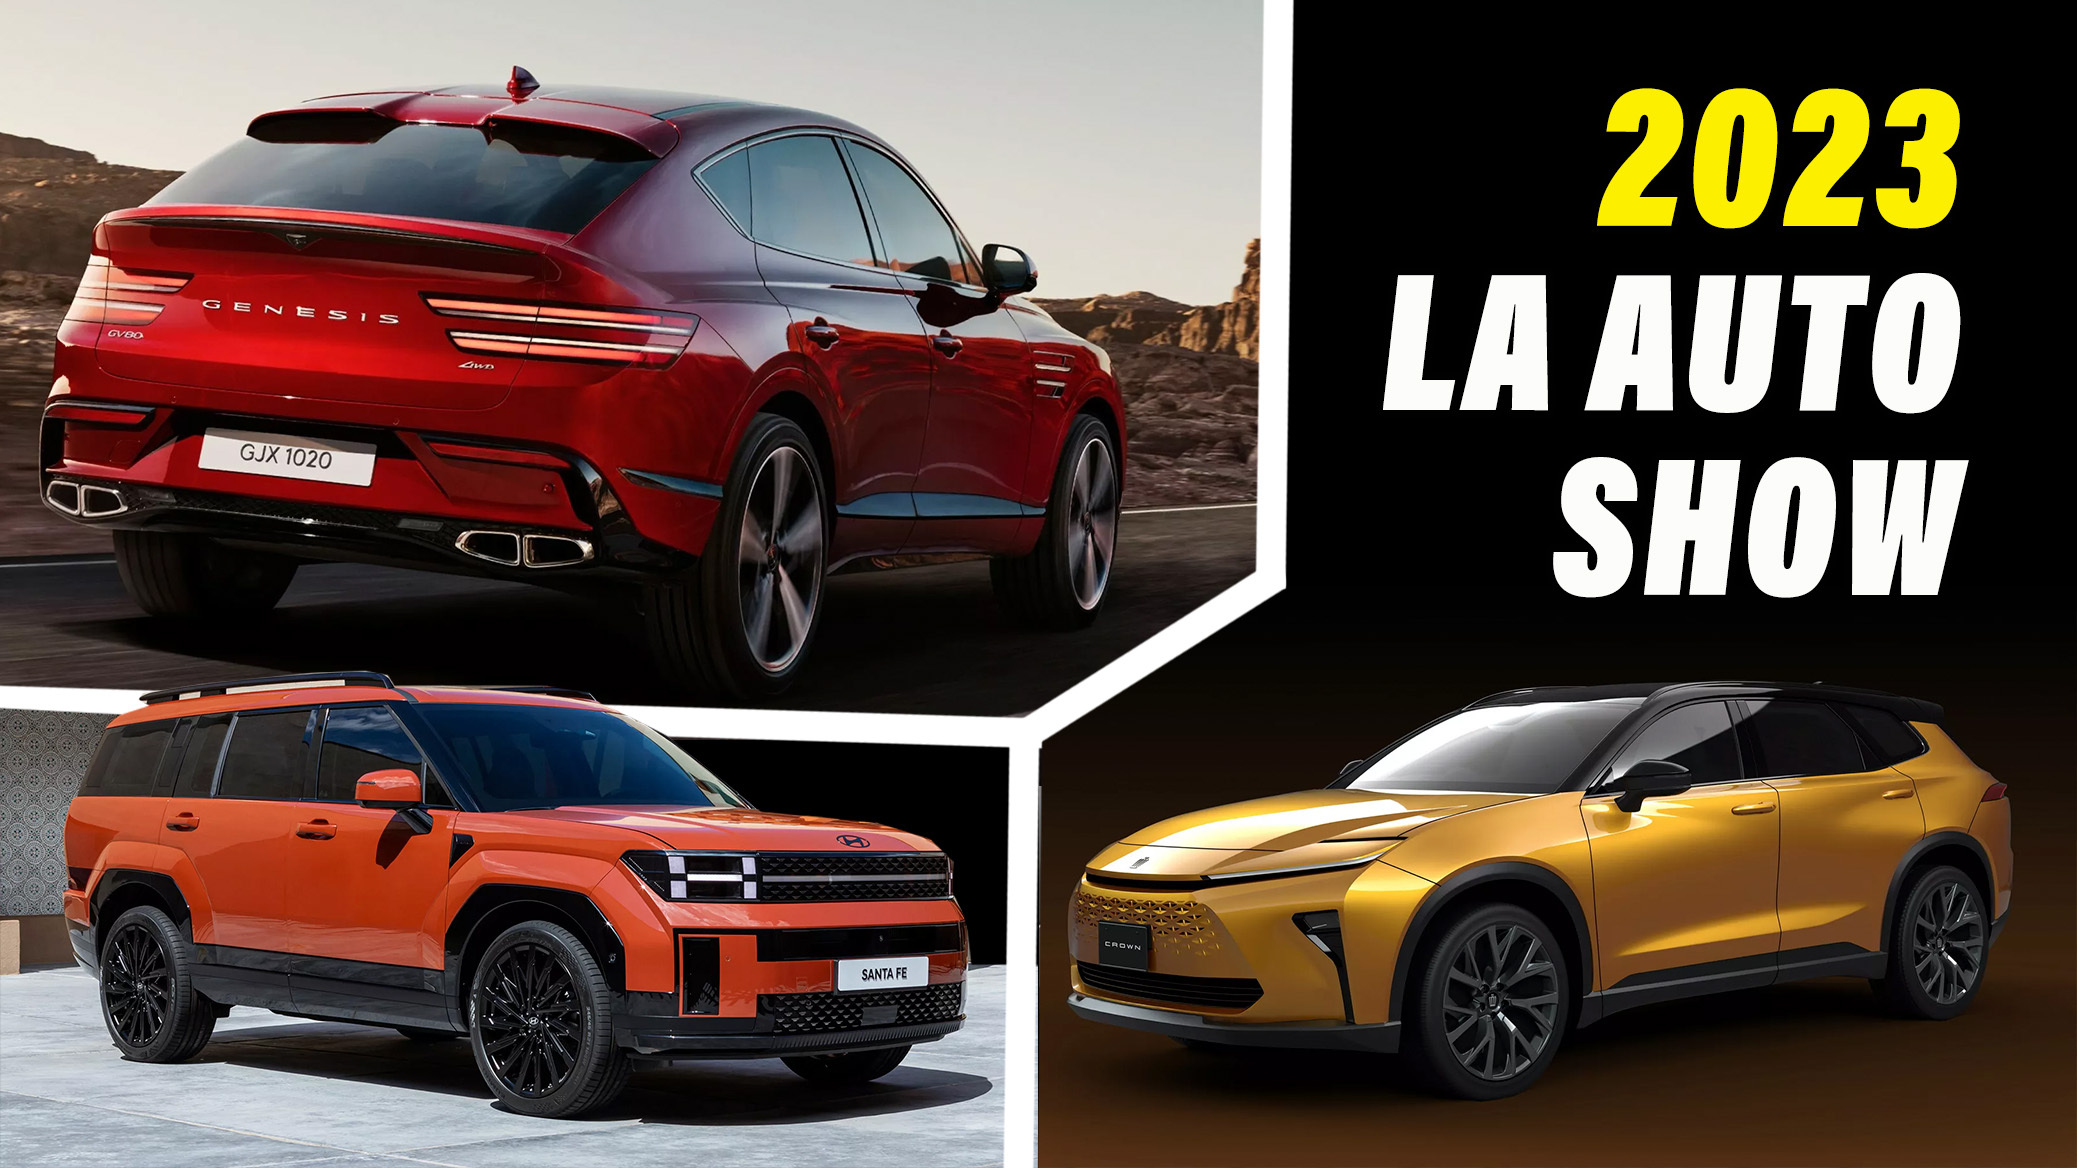 Le LA Auto Show AZ 2023 présente tout, de la Toyota Camry à Lucid